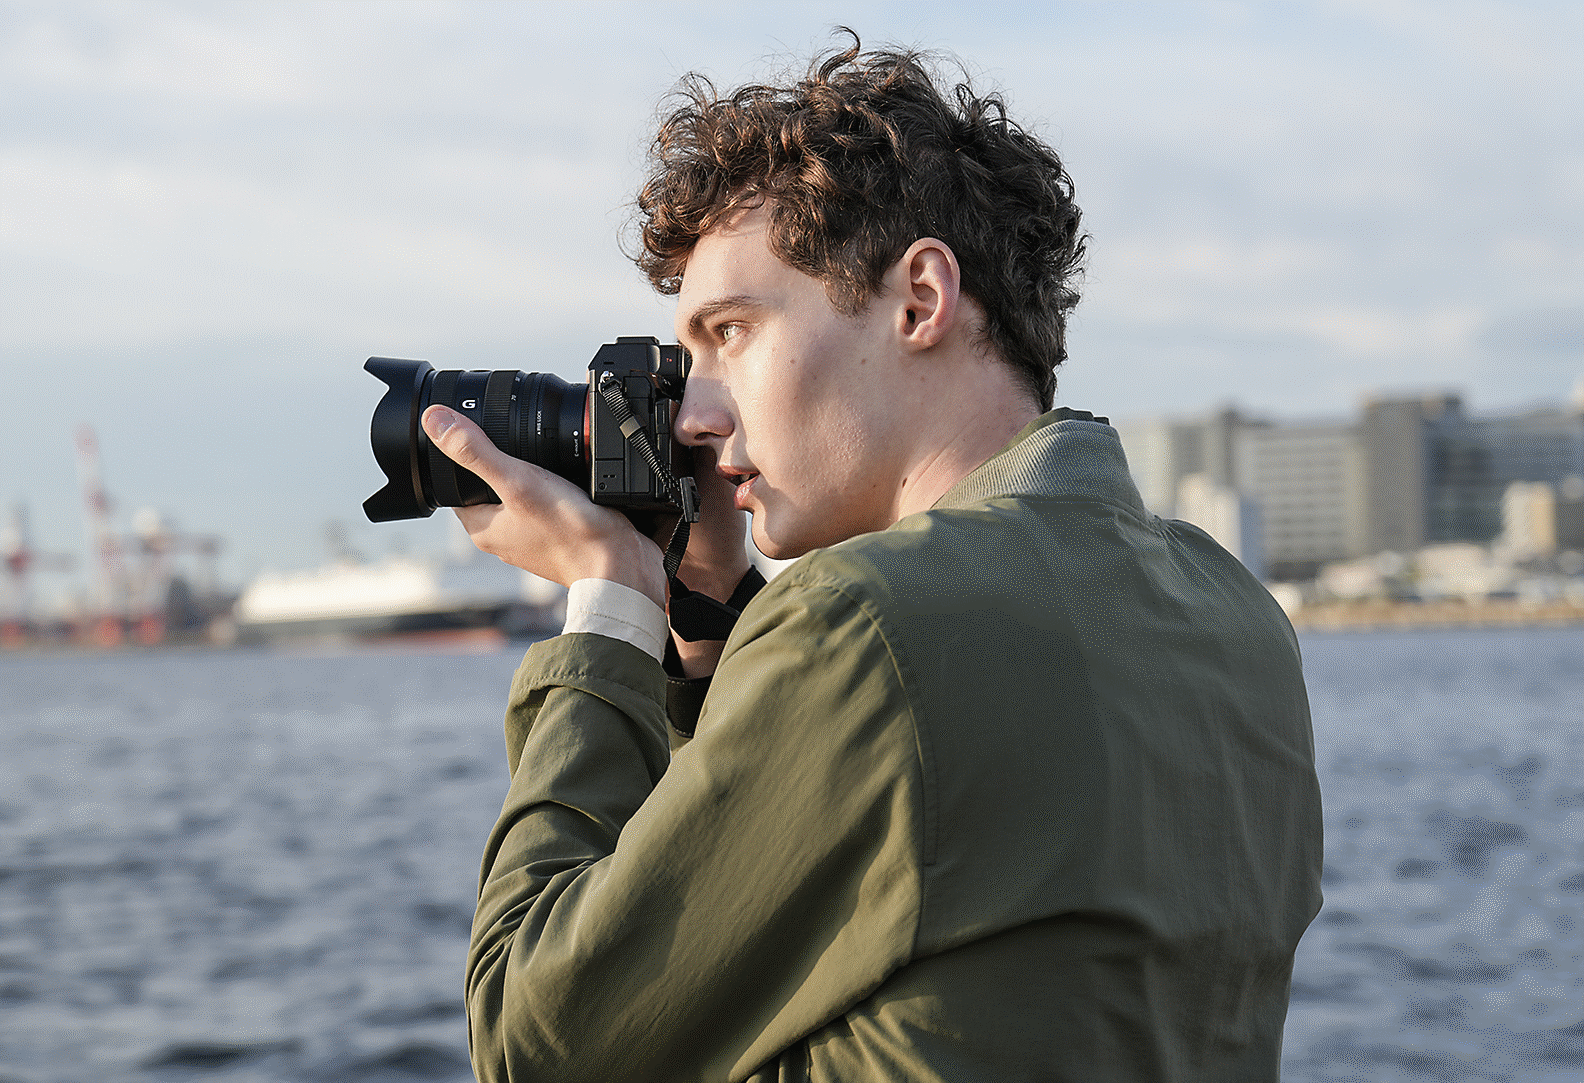 איש מצלם במיקום על חוף הים עם מצלמה בידו, באמצעות עינית